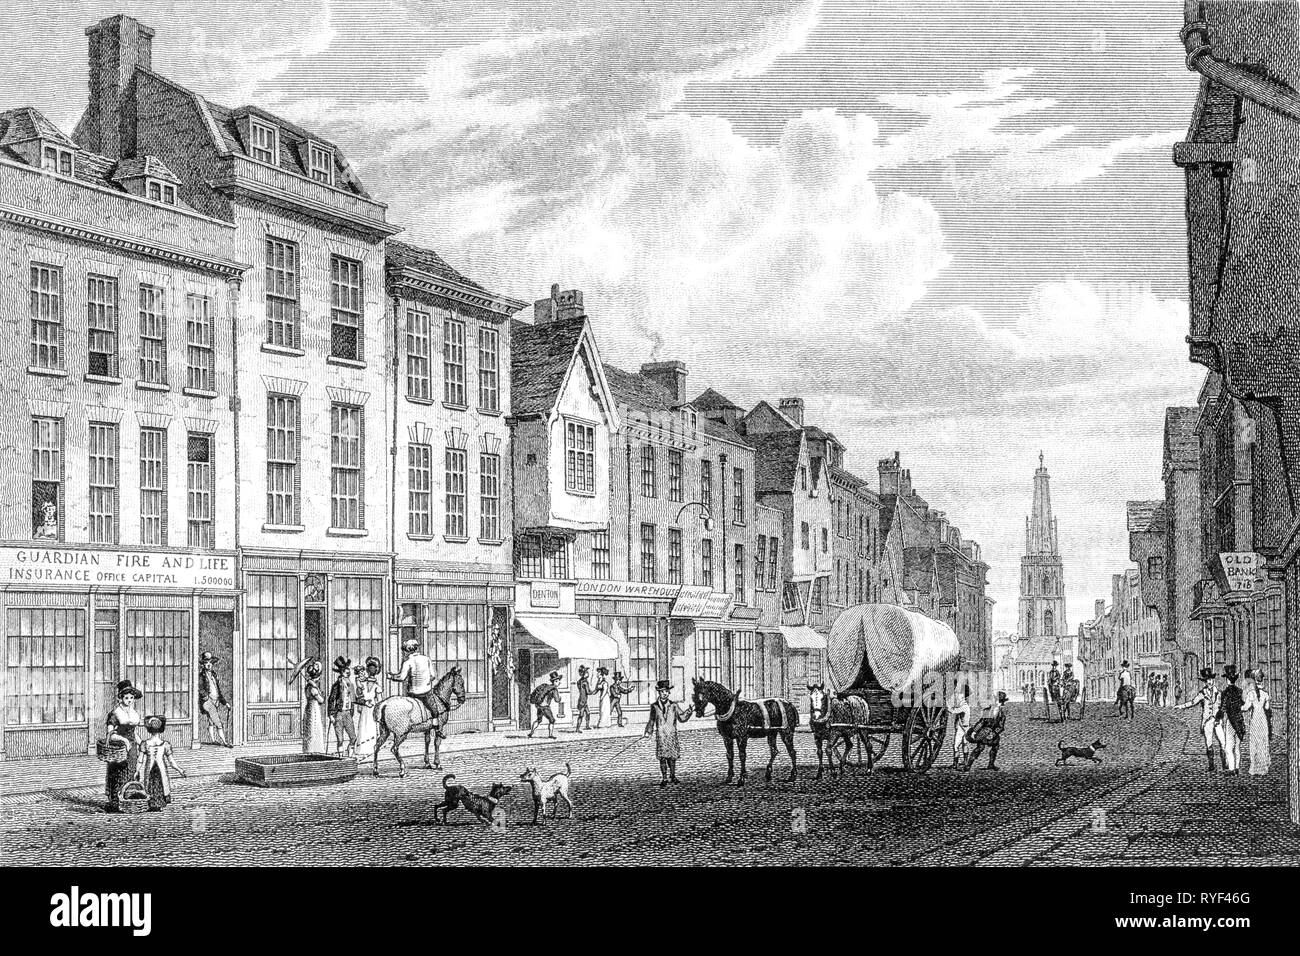 Ein Kupferstich von Westgate Street, Gloucester, Gloucestershire, UK gescannt und in hoher Auflösung aus einem Buch 1825 veröffentlicht. Glaubten copyright frei. Stockfoto